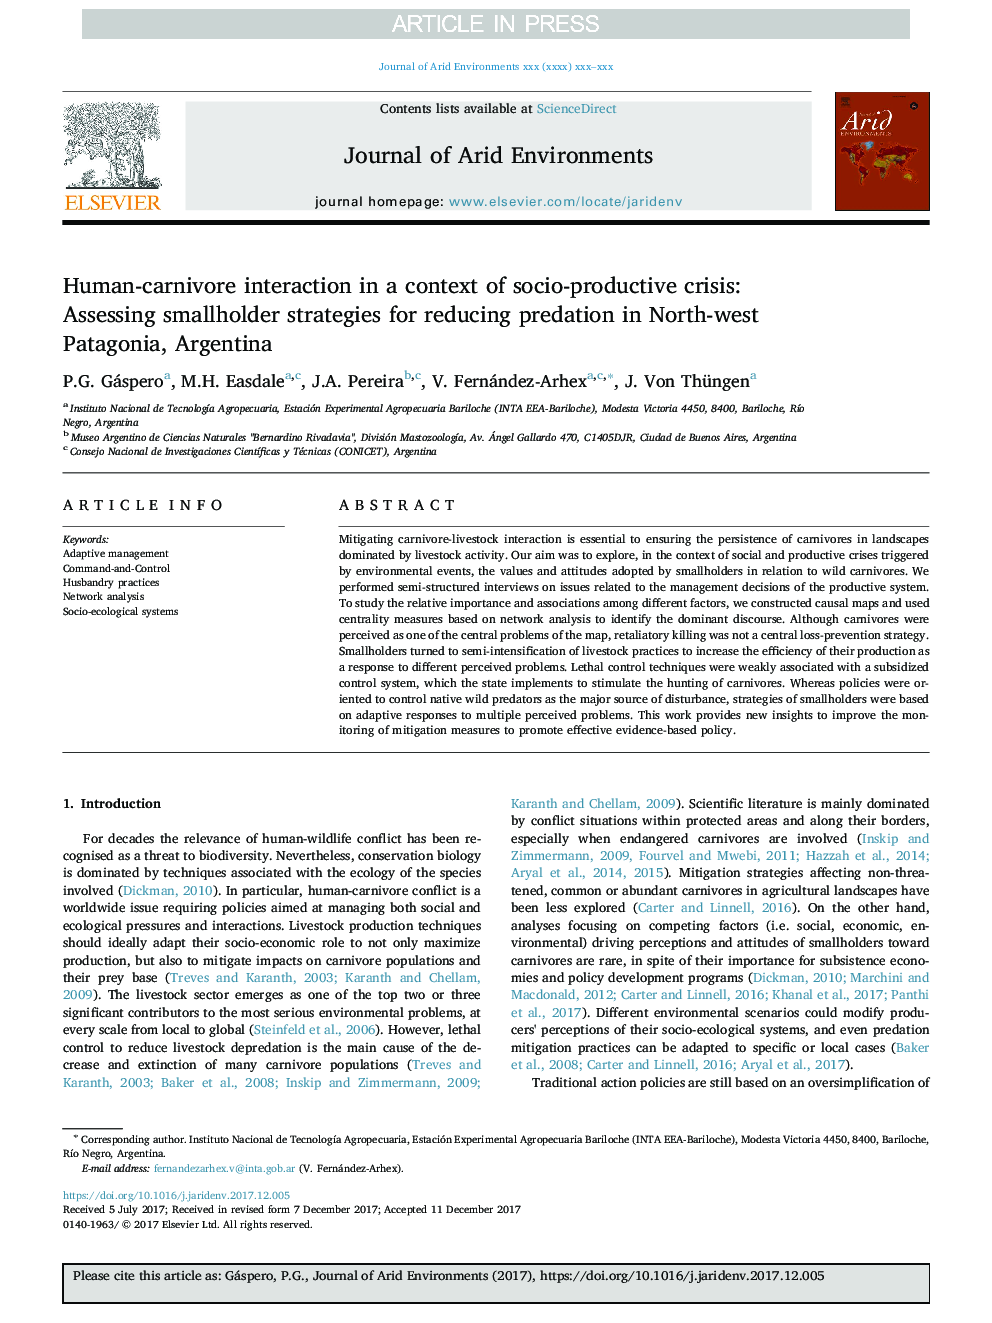 تعامل انسان و گوشتخواران در یک زمینه بحران اجتماعی-تولیدی: ارزیابی استراتژی های کوچک برای کاهش شورش در شمال غرب پاتاگونیا، آرژانتین 